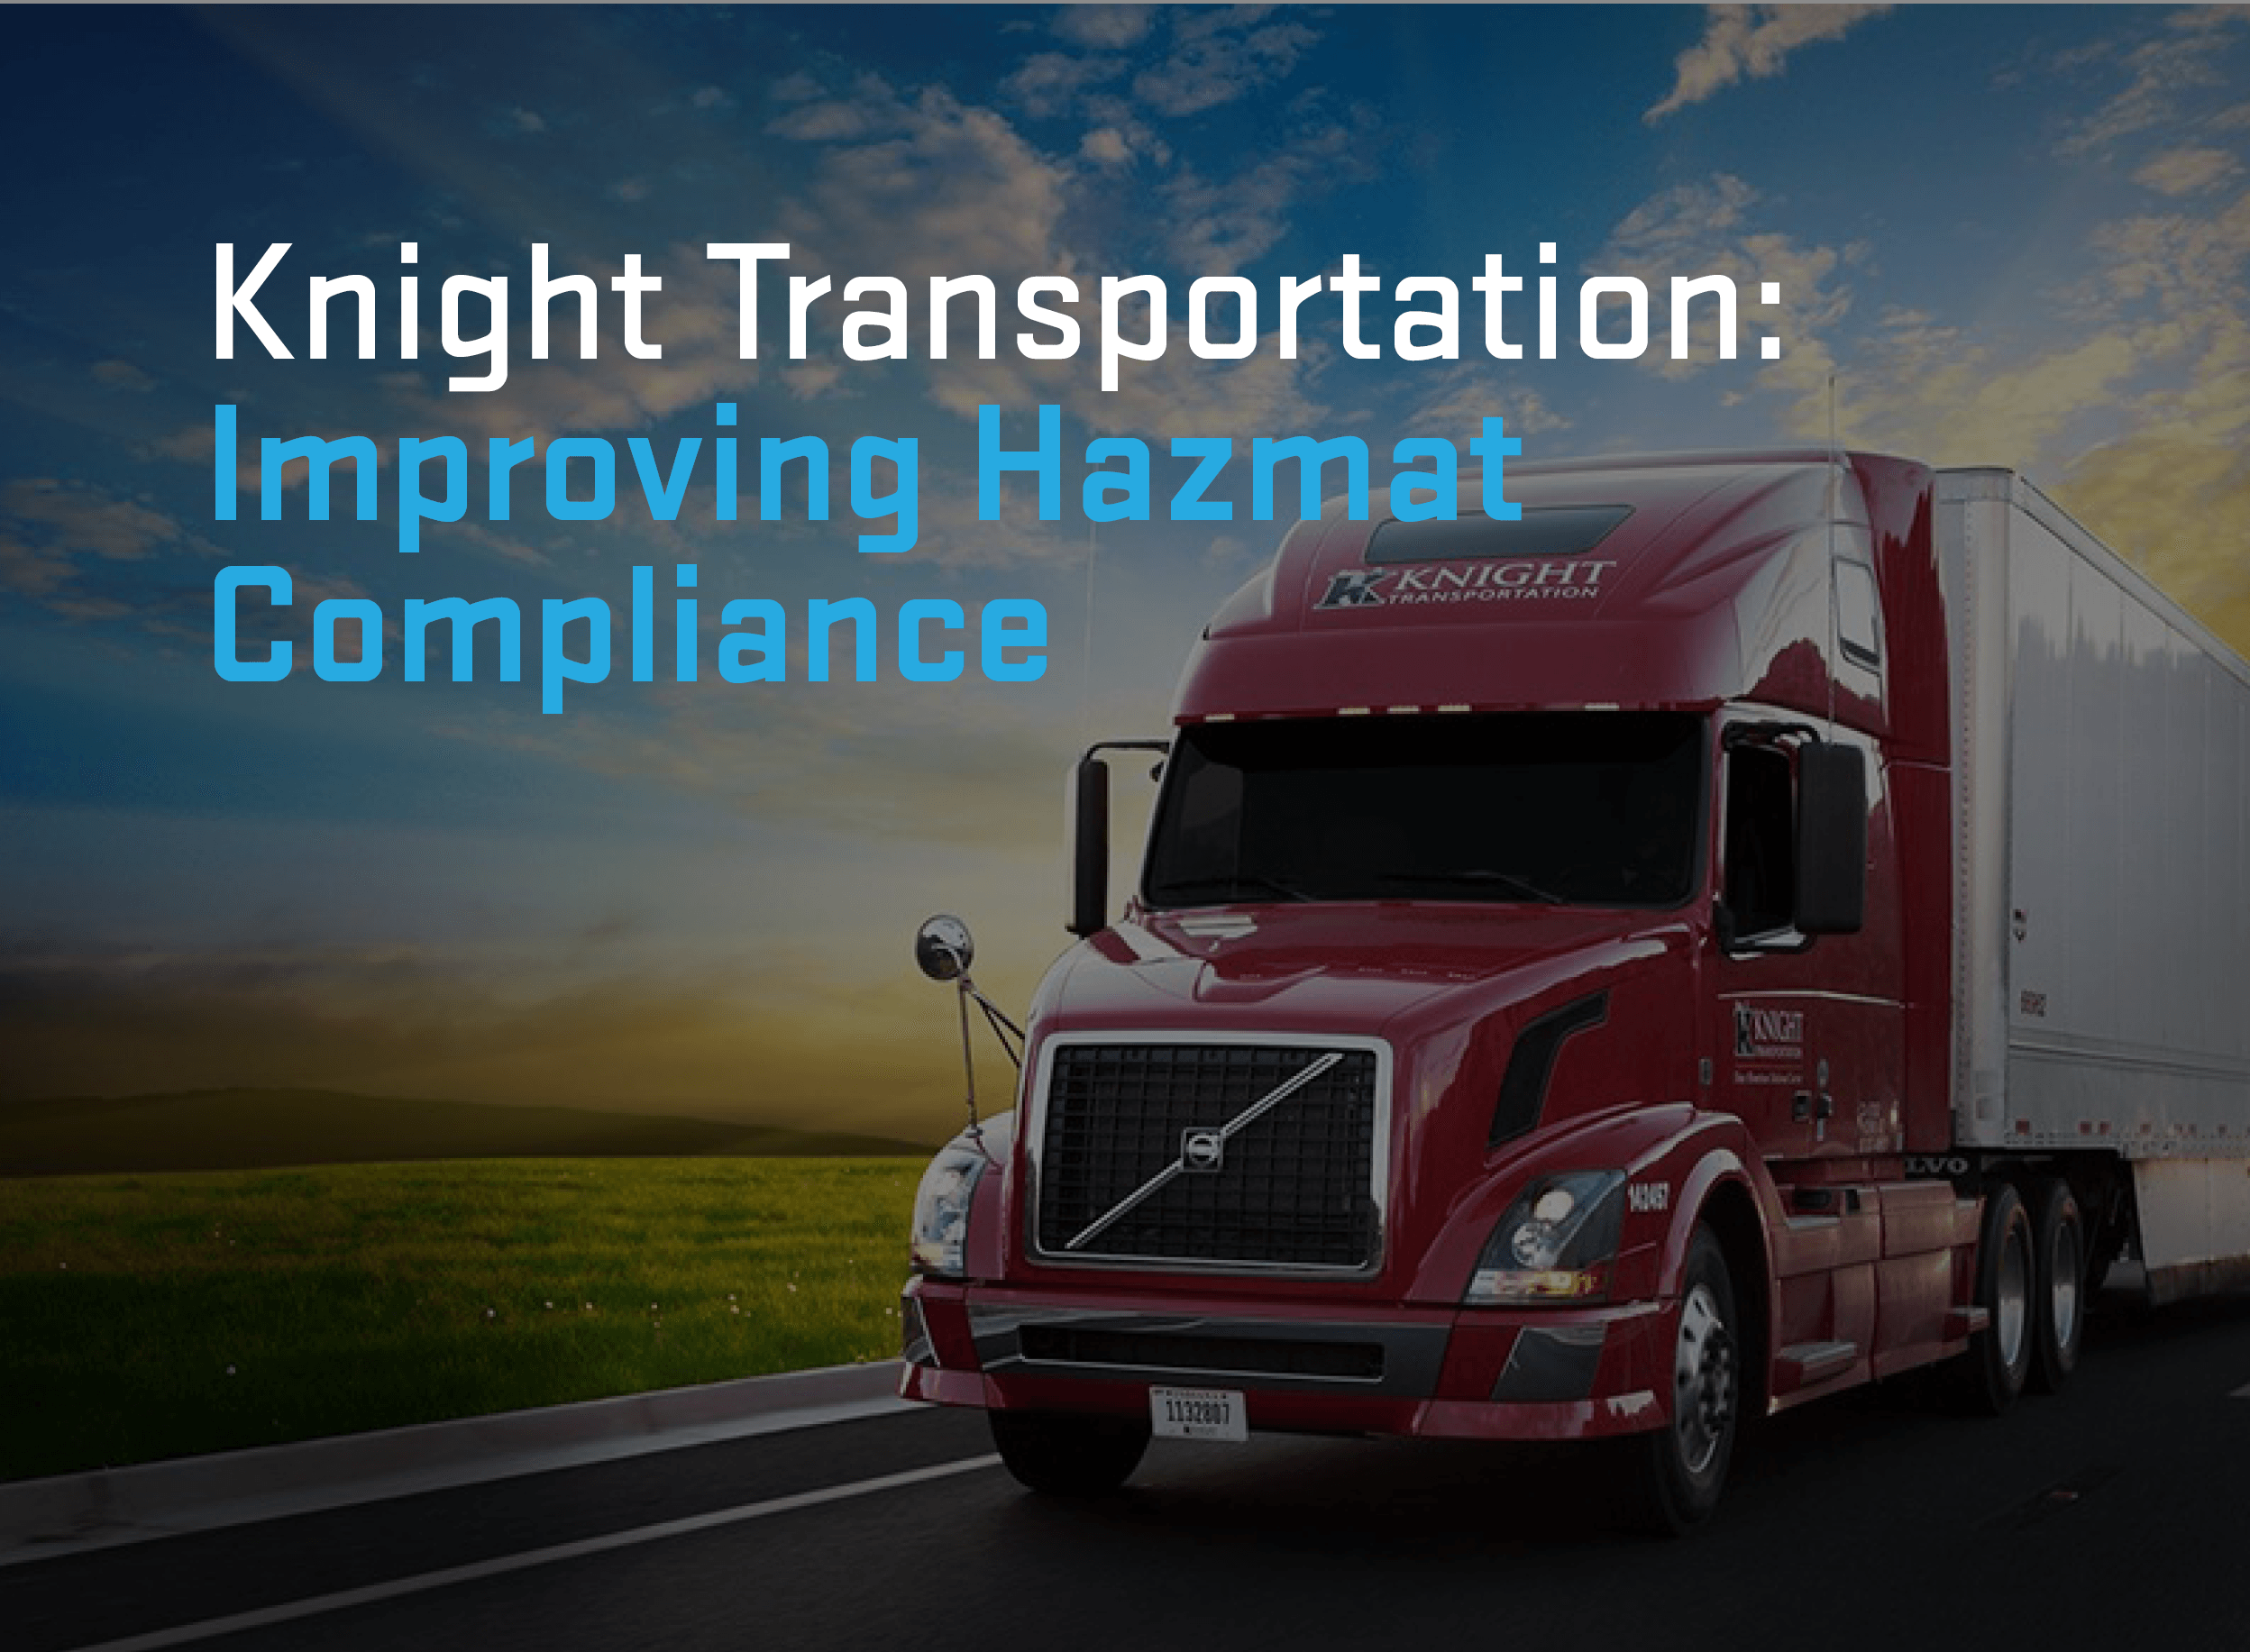 Knight Transportation Hazmat Compliance